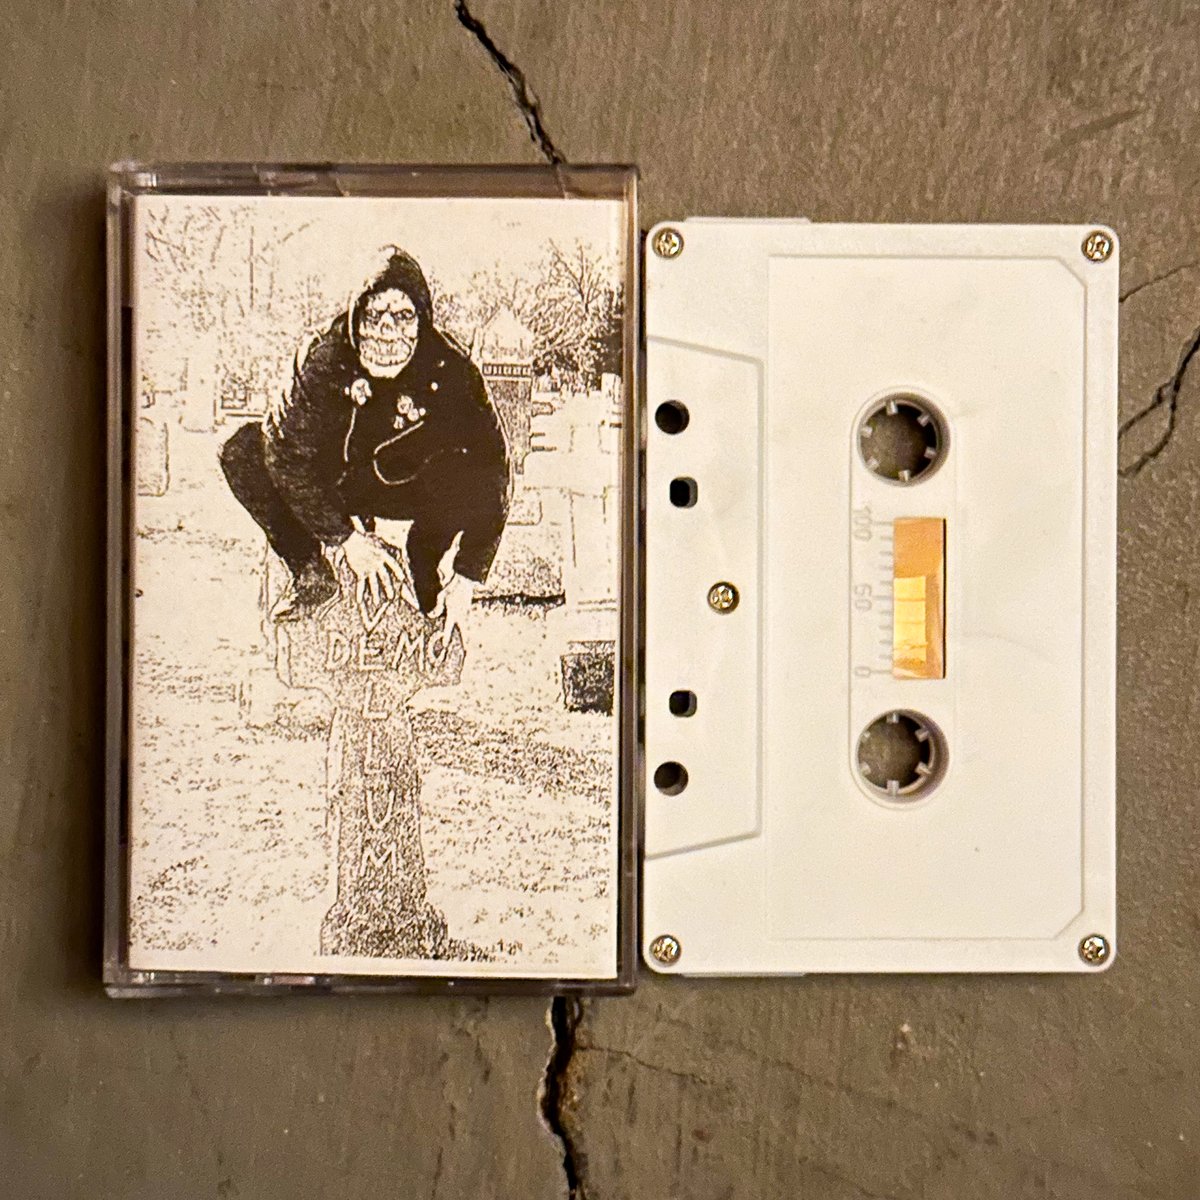 Image of Vellum - "Demo" Cassette